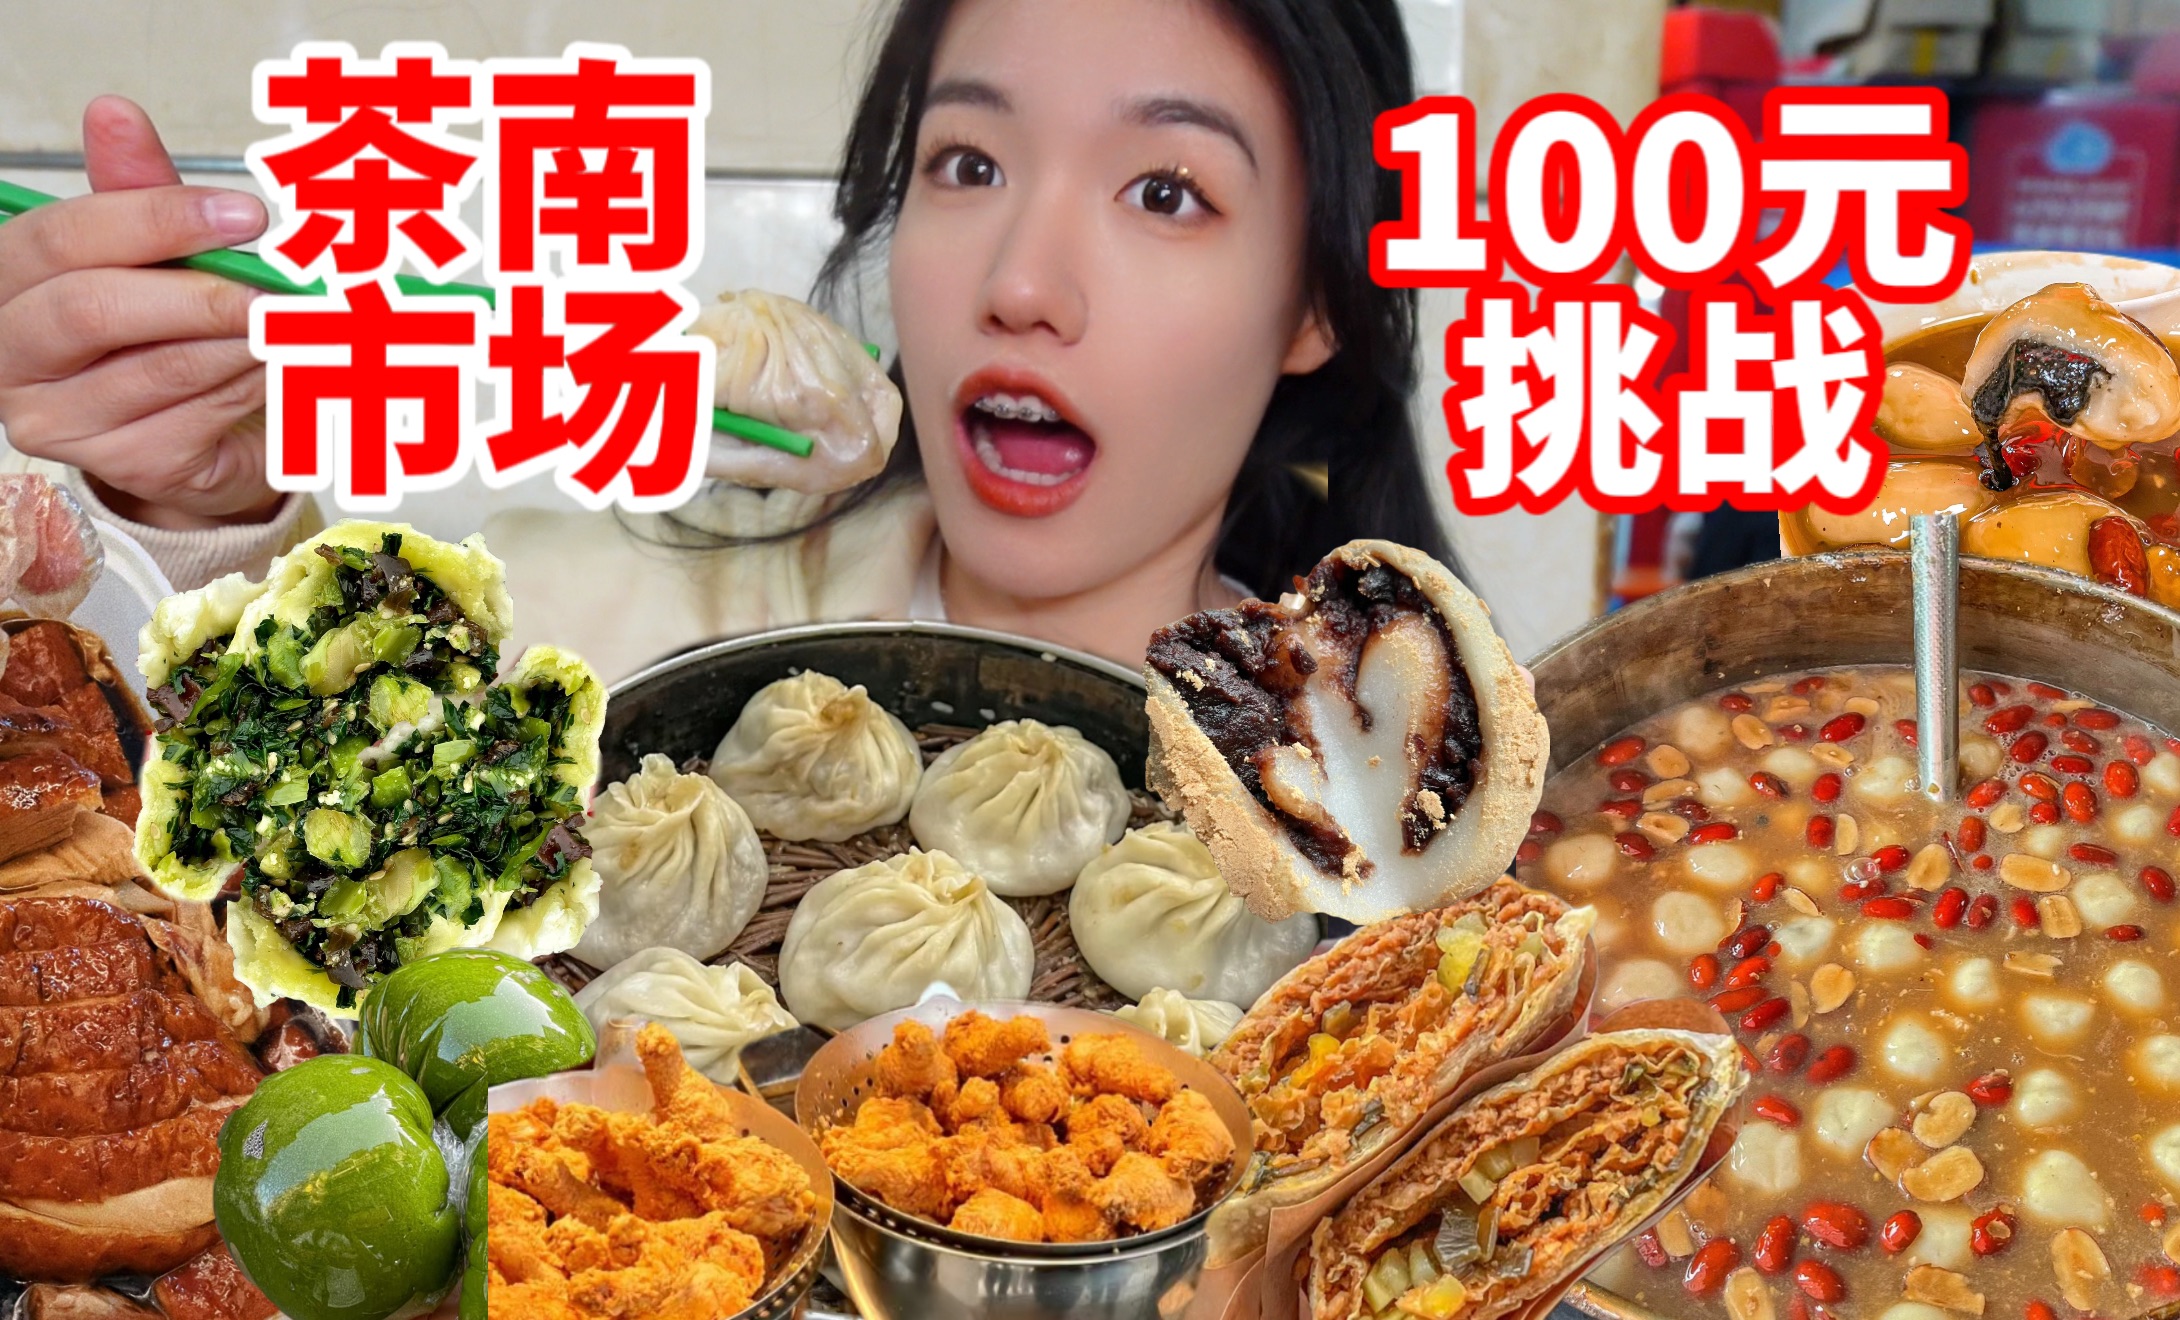 100元挑战在南京茶南农贸市场吃饱！别再去科巷了！这才是老南京最爱的美食天堂